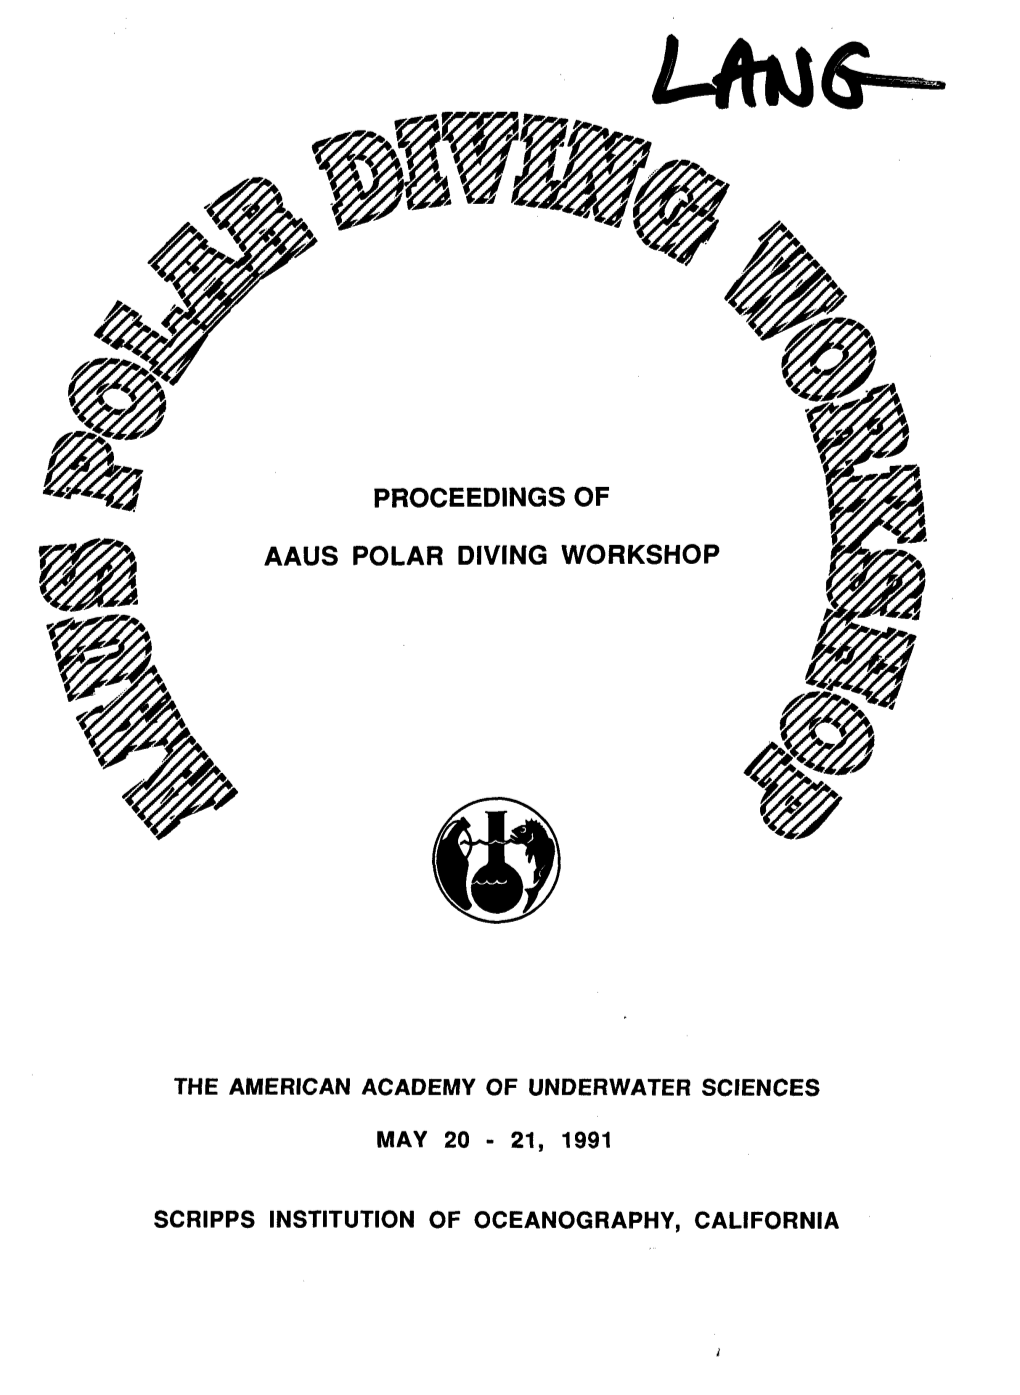 Proceedings of Aaus Polar Diving Workshop